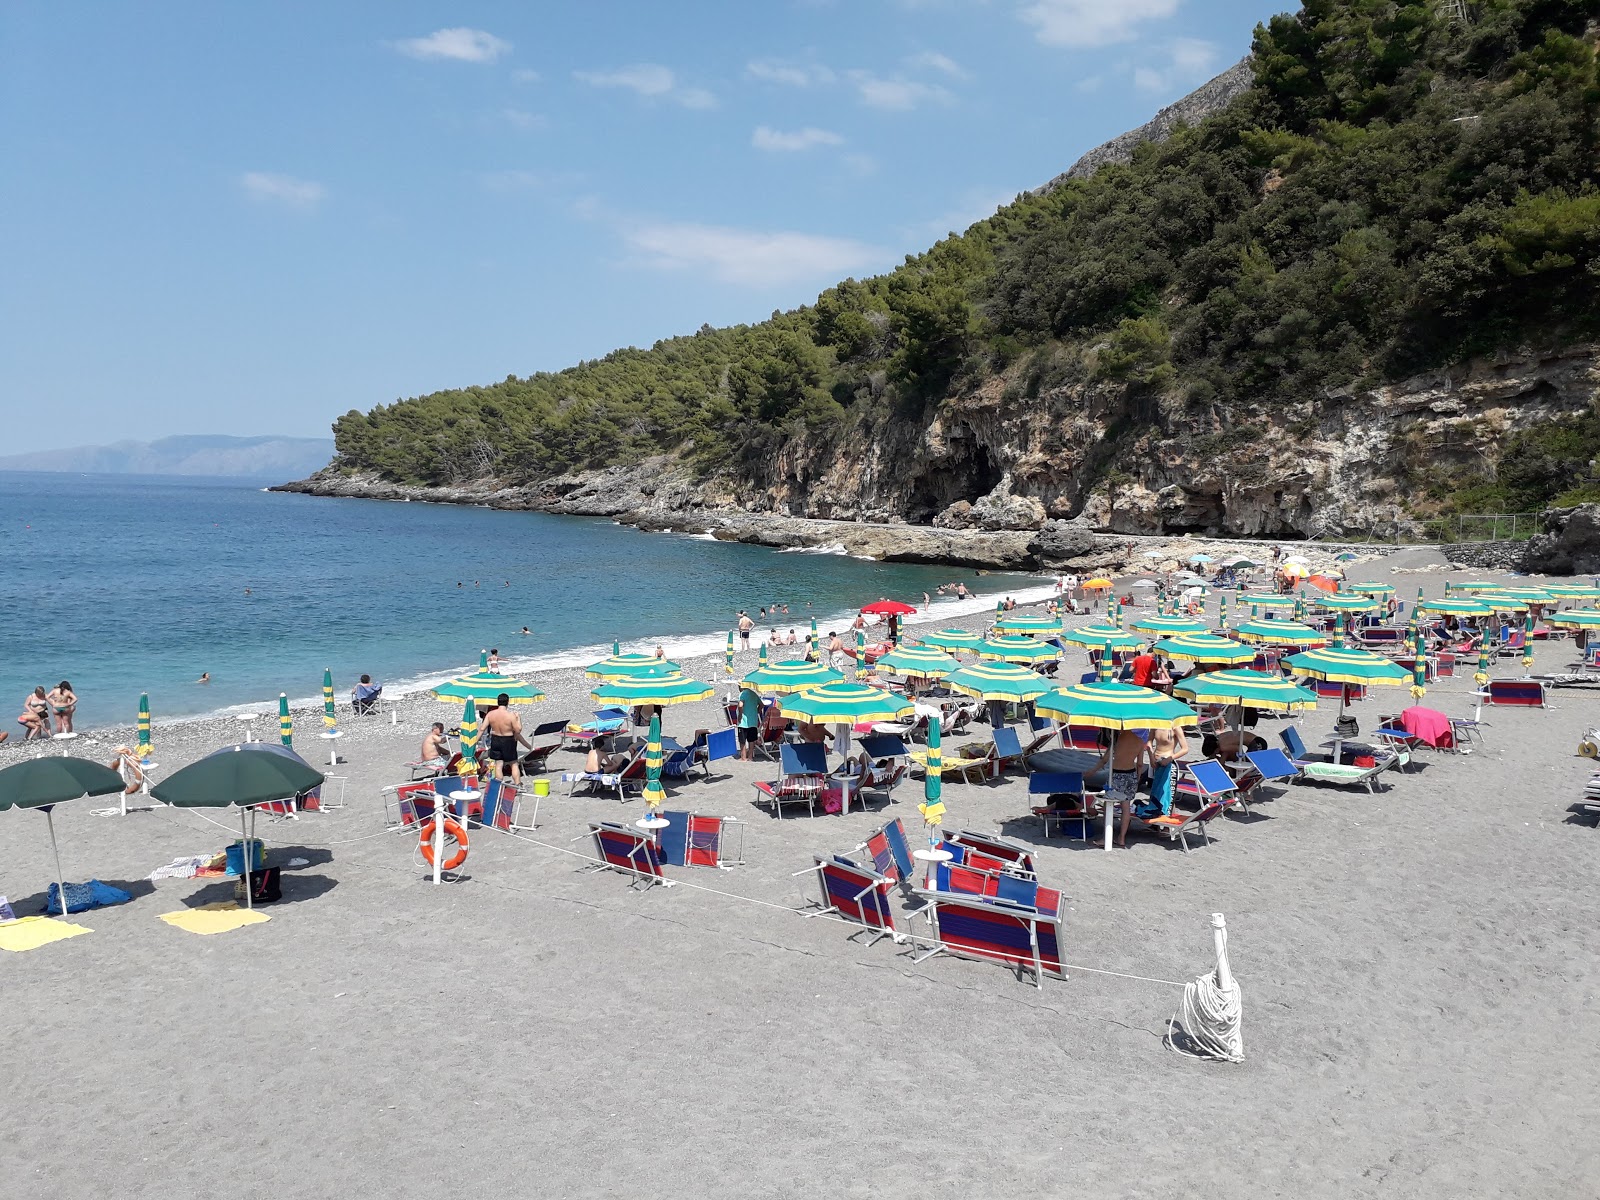 Zdjęcie Spiaggia di Fiumicello położony w naturalnym obszarze